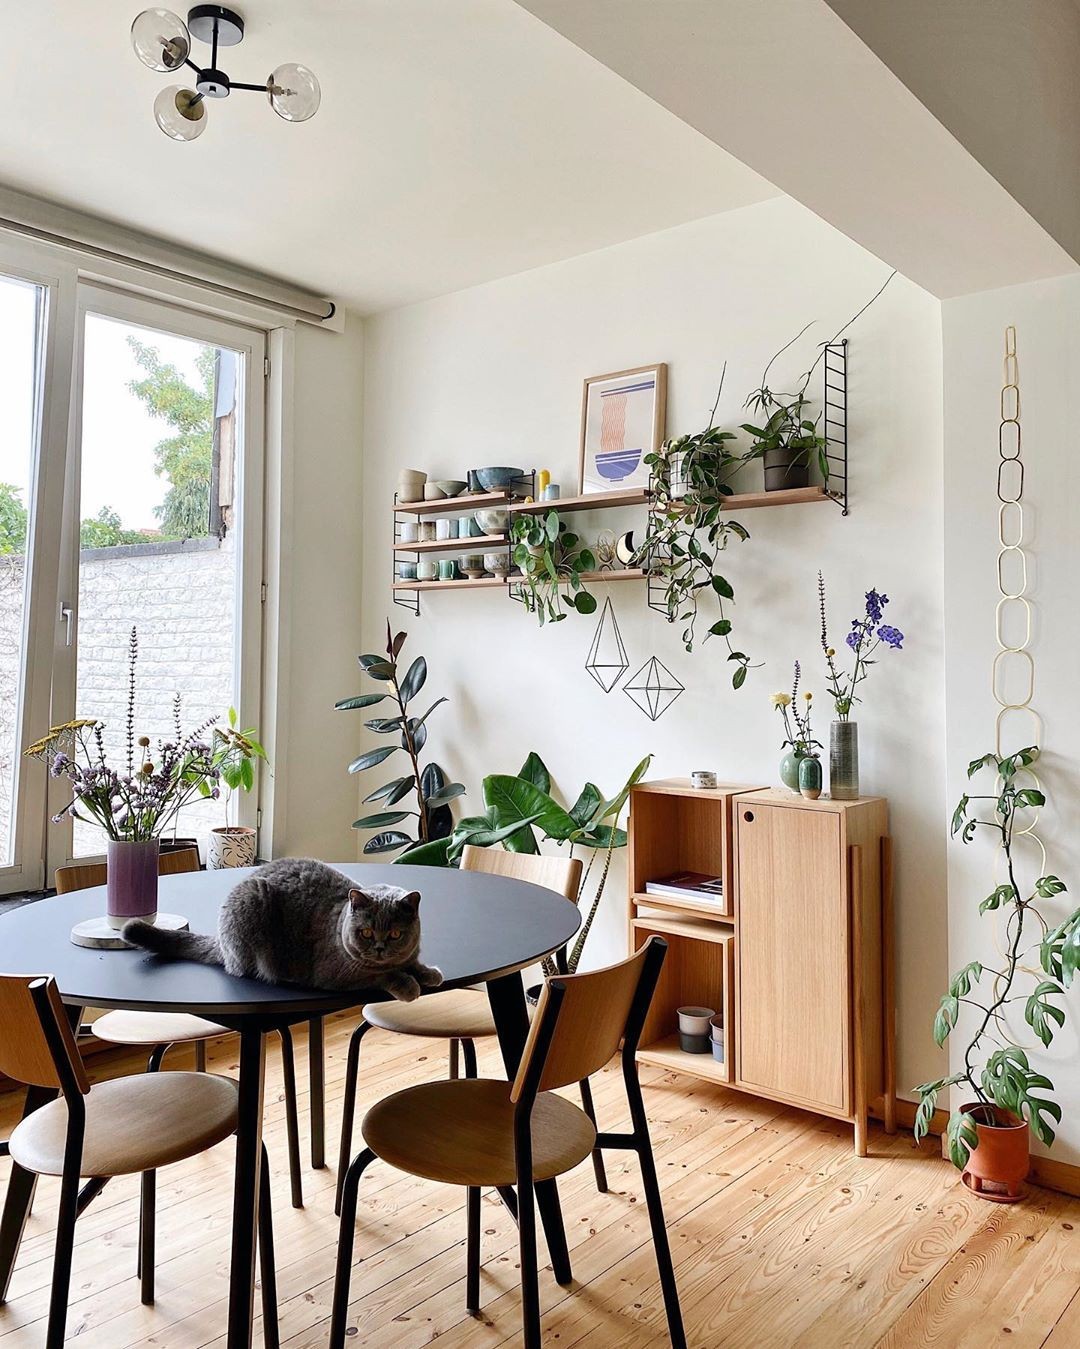 Décor do dia: sala de jantar pequena com muitas plantas e detalhes em madeira (Foto: Divulgação)